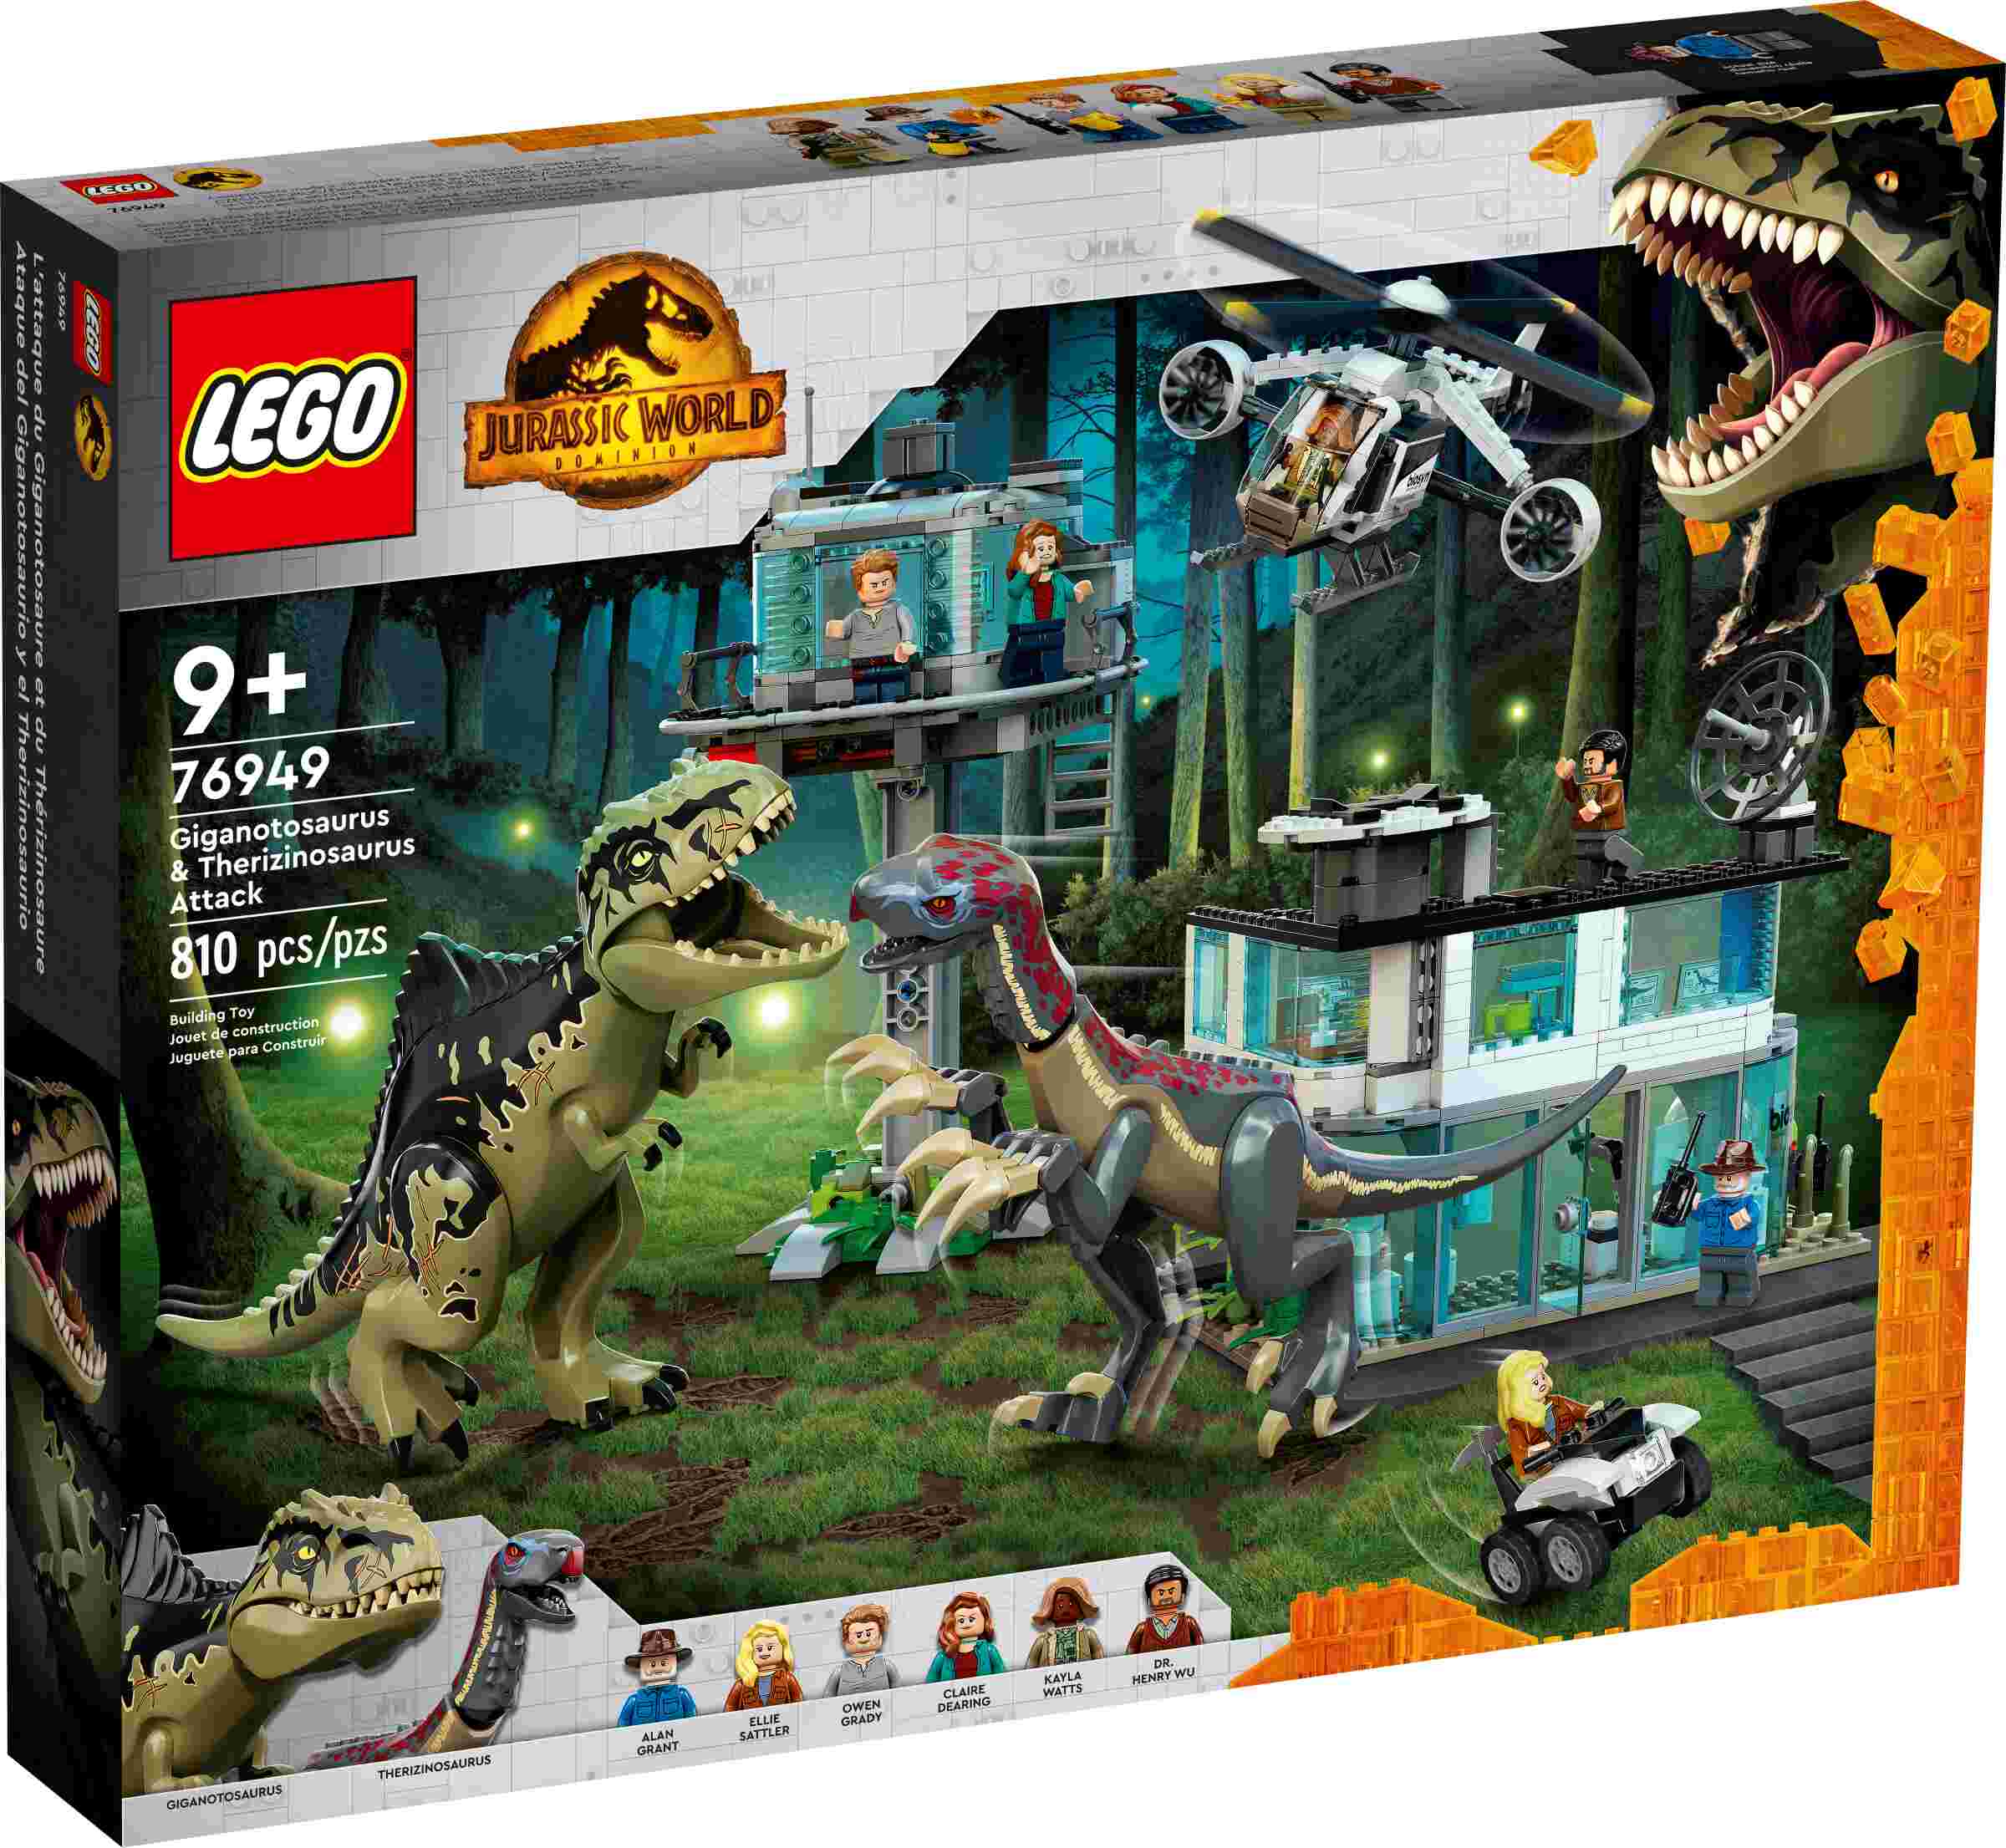 LEGO 76949 Jurassic World Giganotosaurus & Therizinosaurus Angriff, Hubschrauber